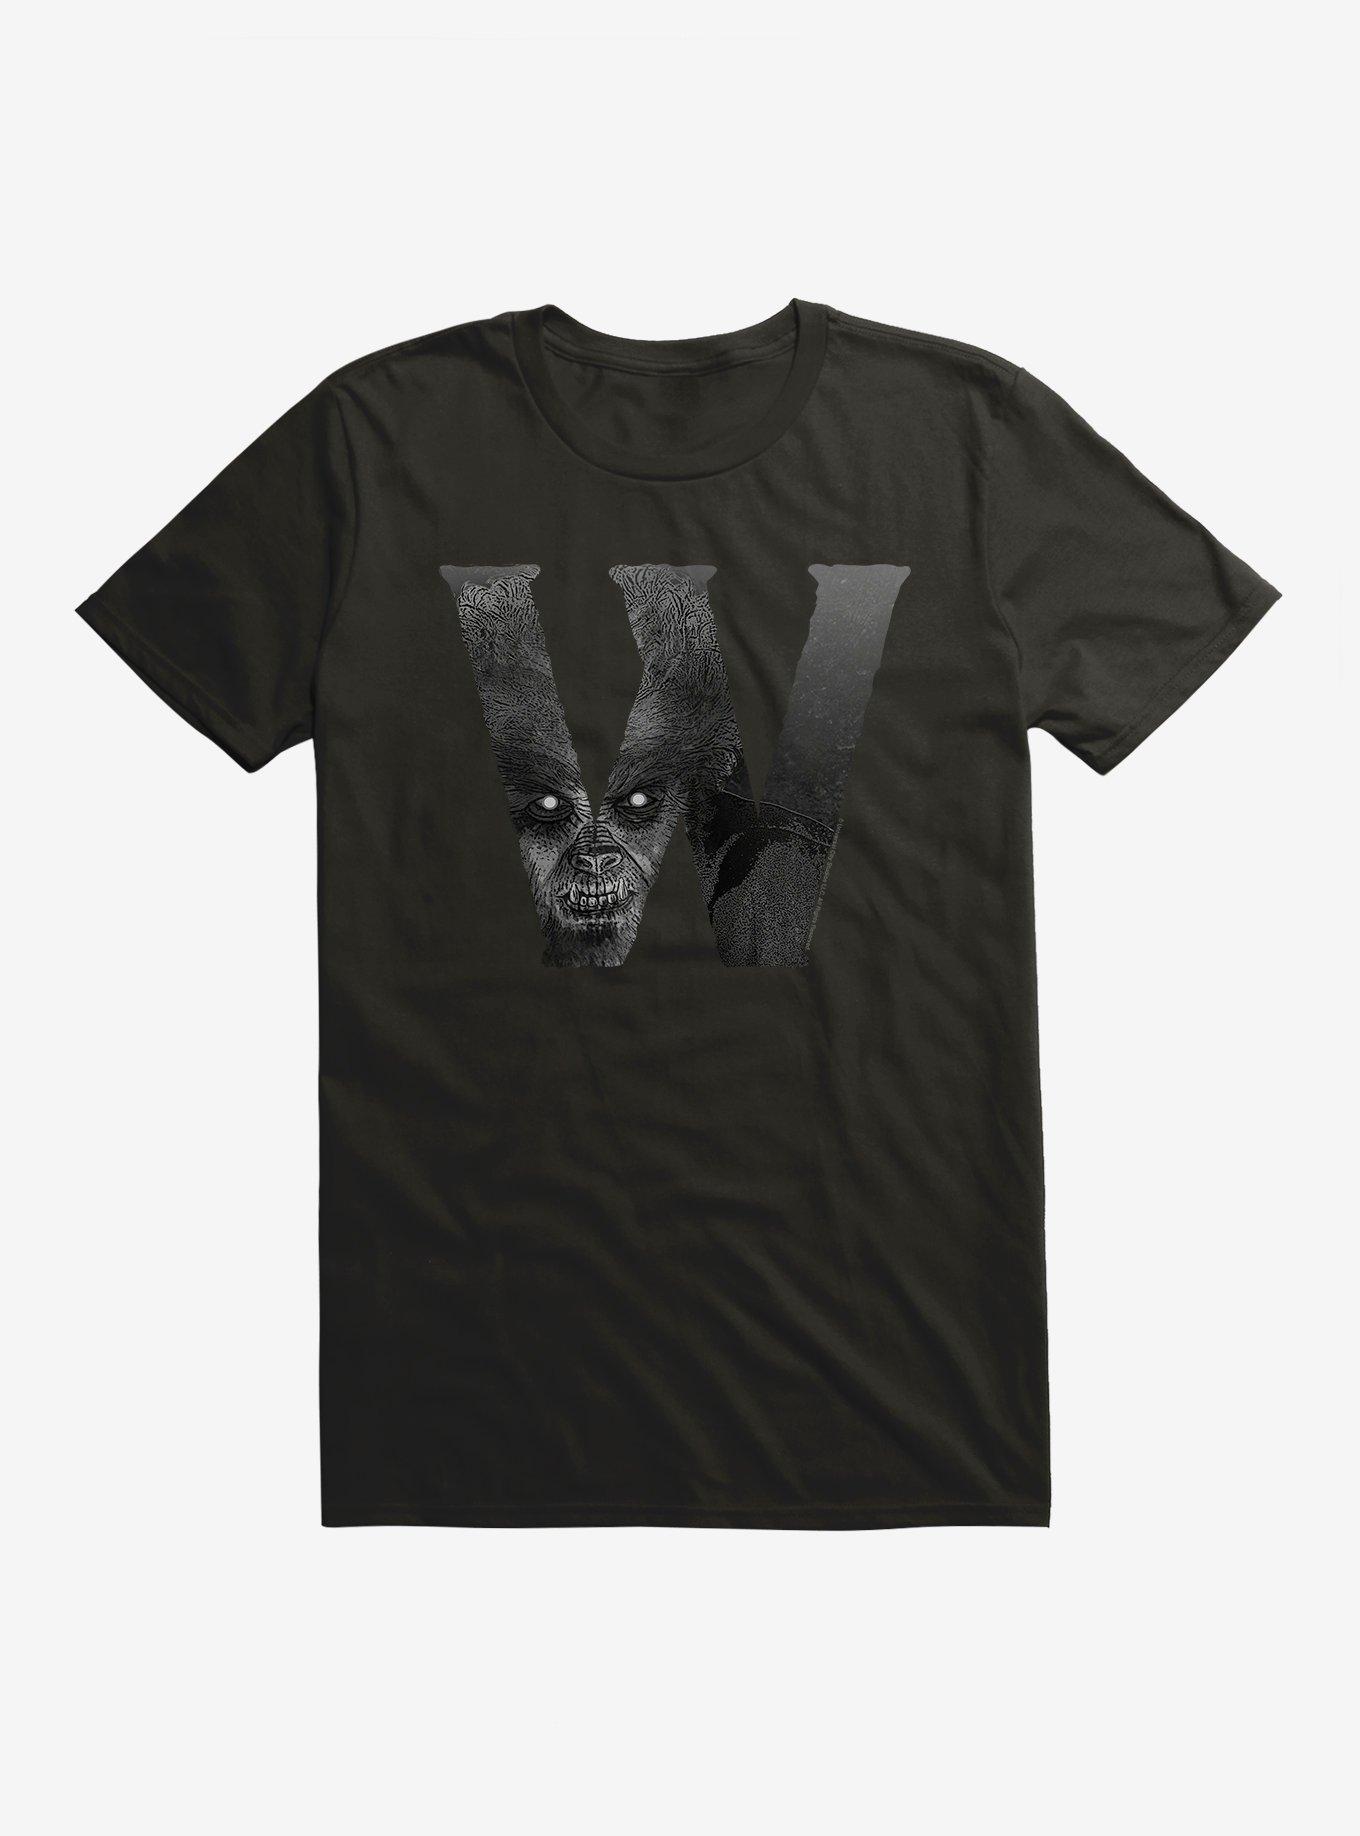 Universal Monsters The Wolf Man Werewolf Script Fill T-Shirt